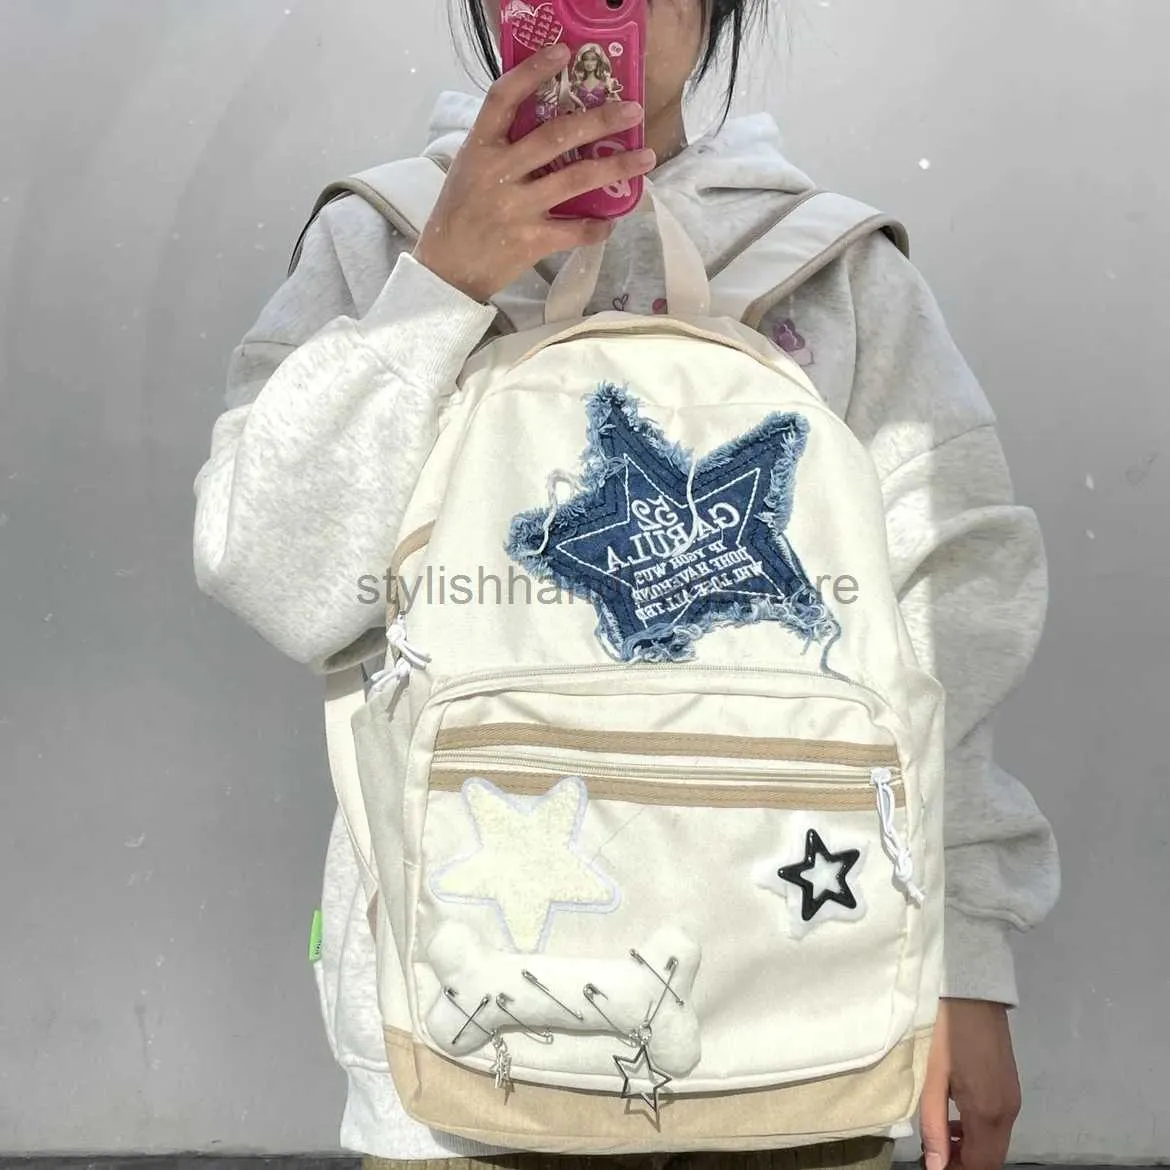 Cross Body Bag Cute School Backpack Student Bags Schoolbag Travel Ladies Teenage Backpacks forstylishhandbagsstore